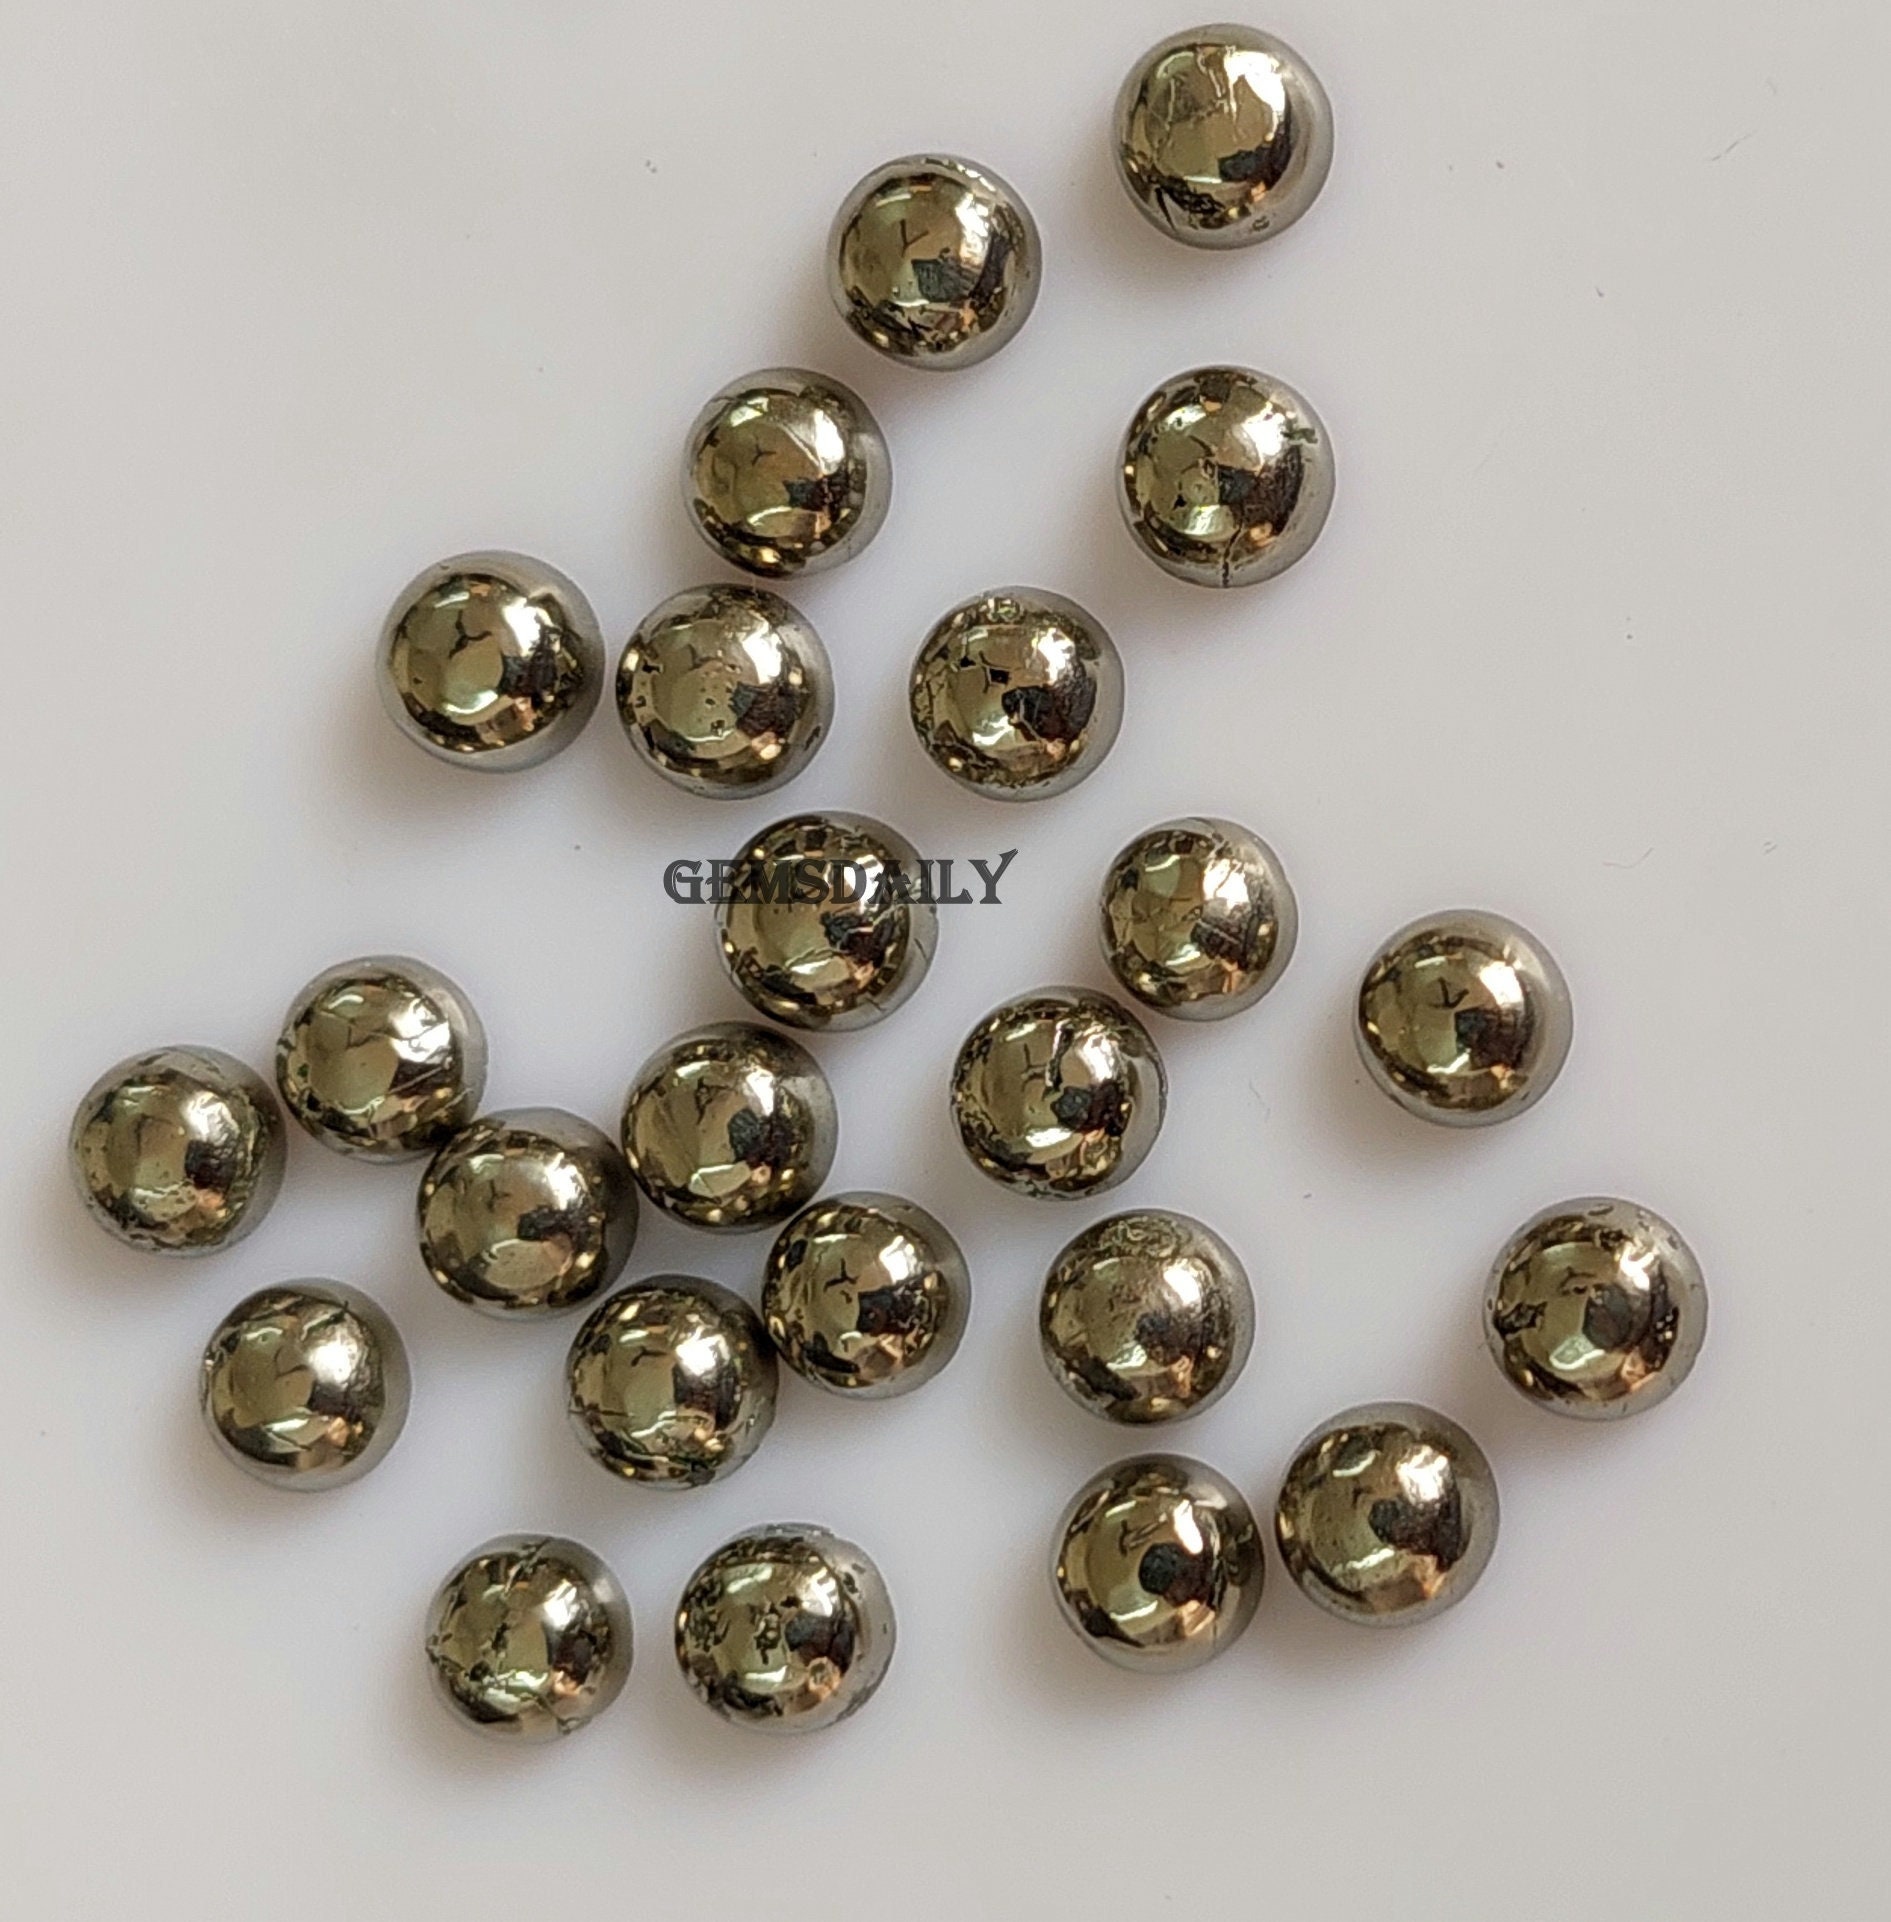 Pyrite Round Gemstone 10 pieces 4mm Golden Pyrite Cabochon Round Gemstone 